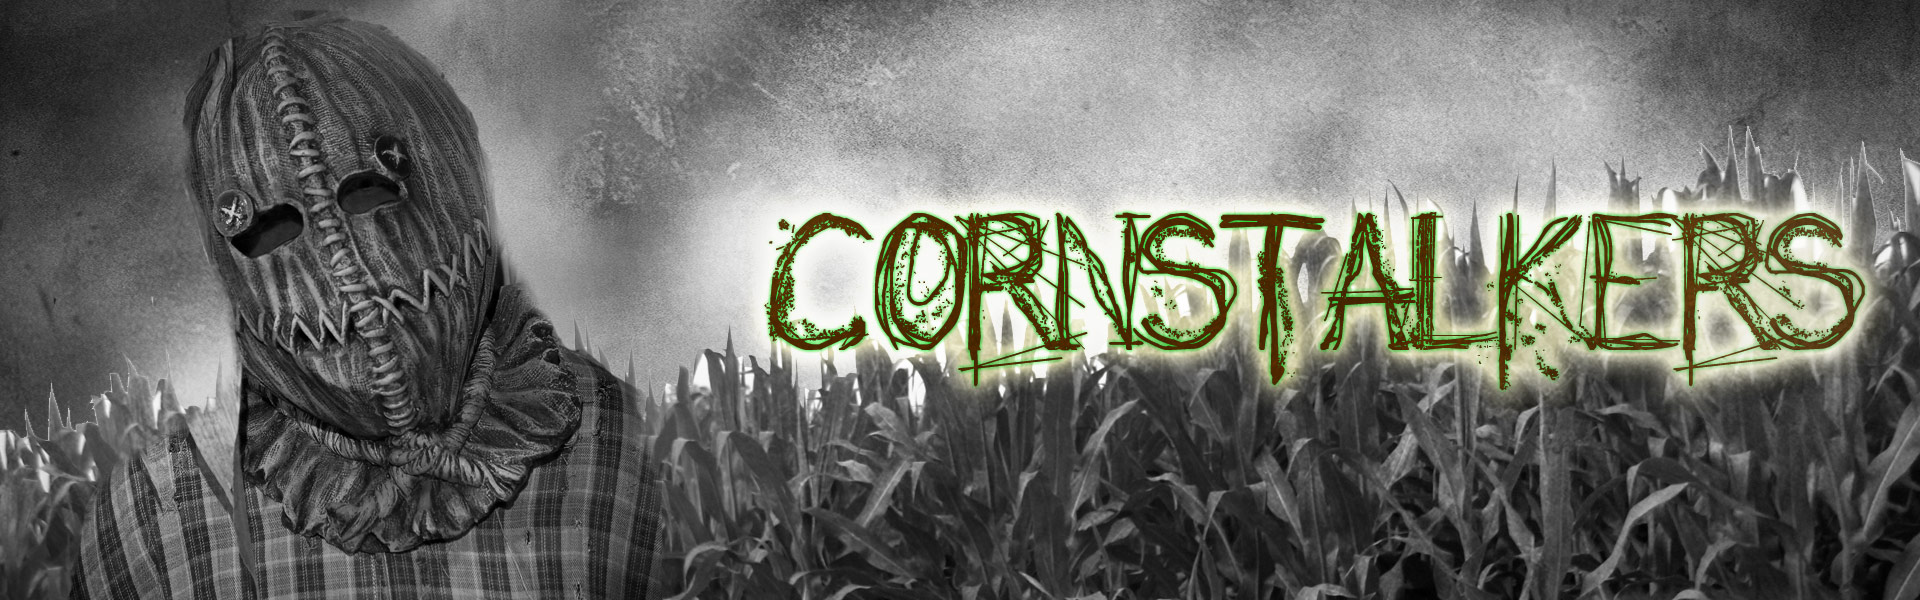 cw_cornstalkers_header